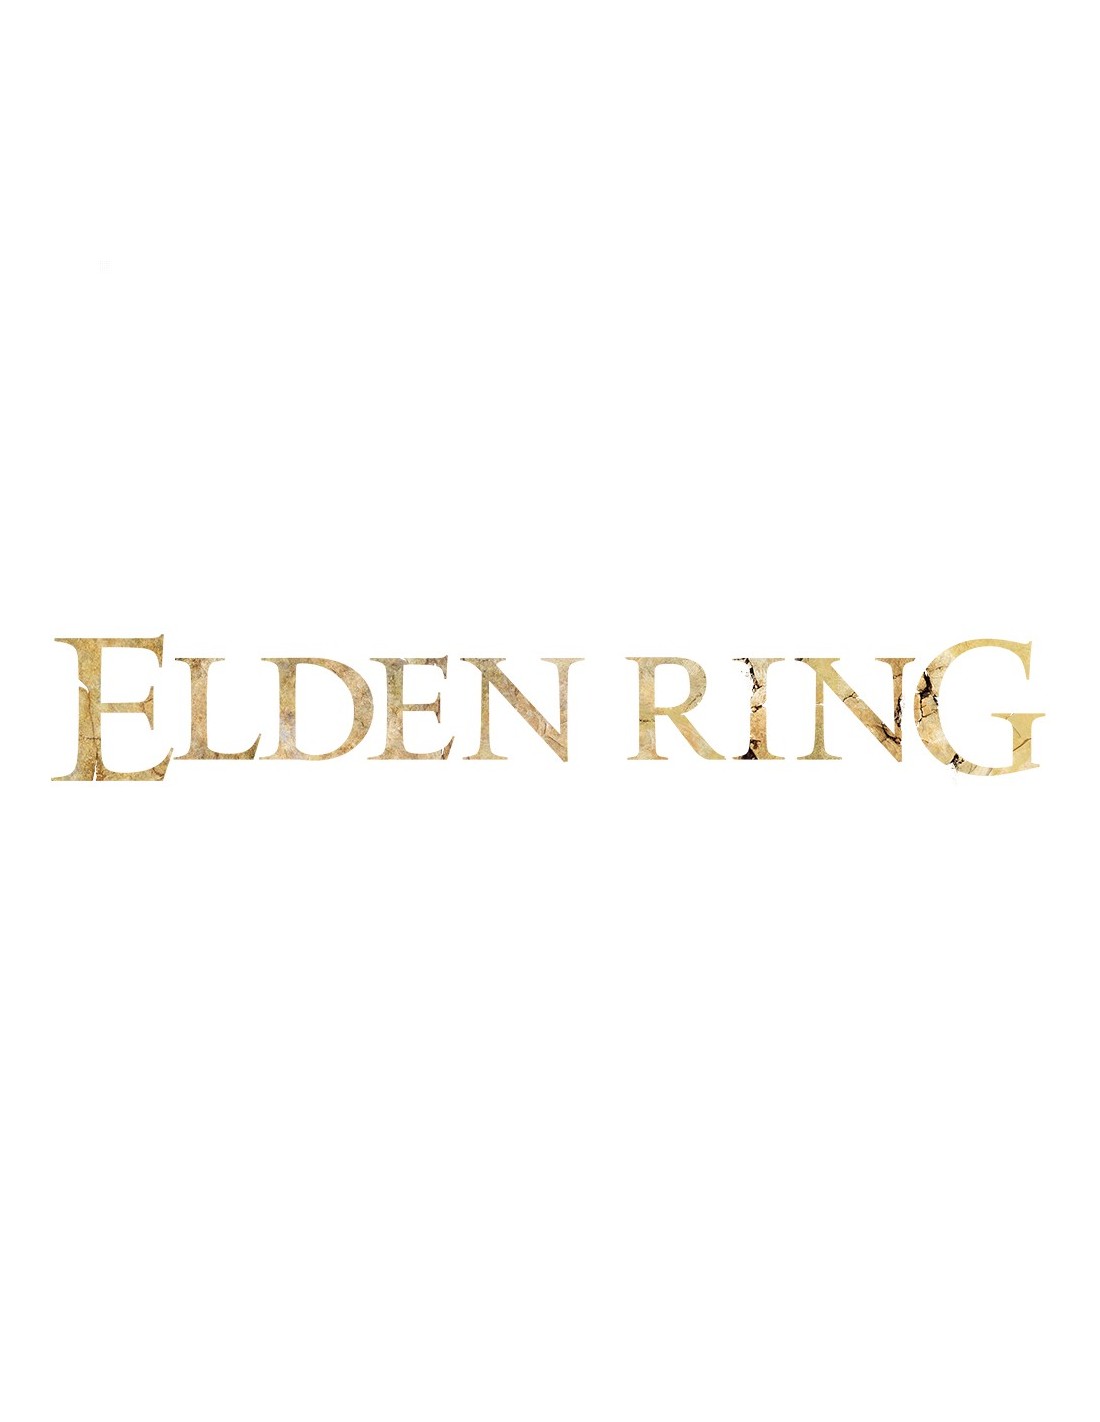 BANDAI Ring Elden Estándar 4 Entertainment NAMCO PlayStation